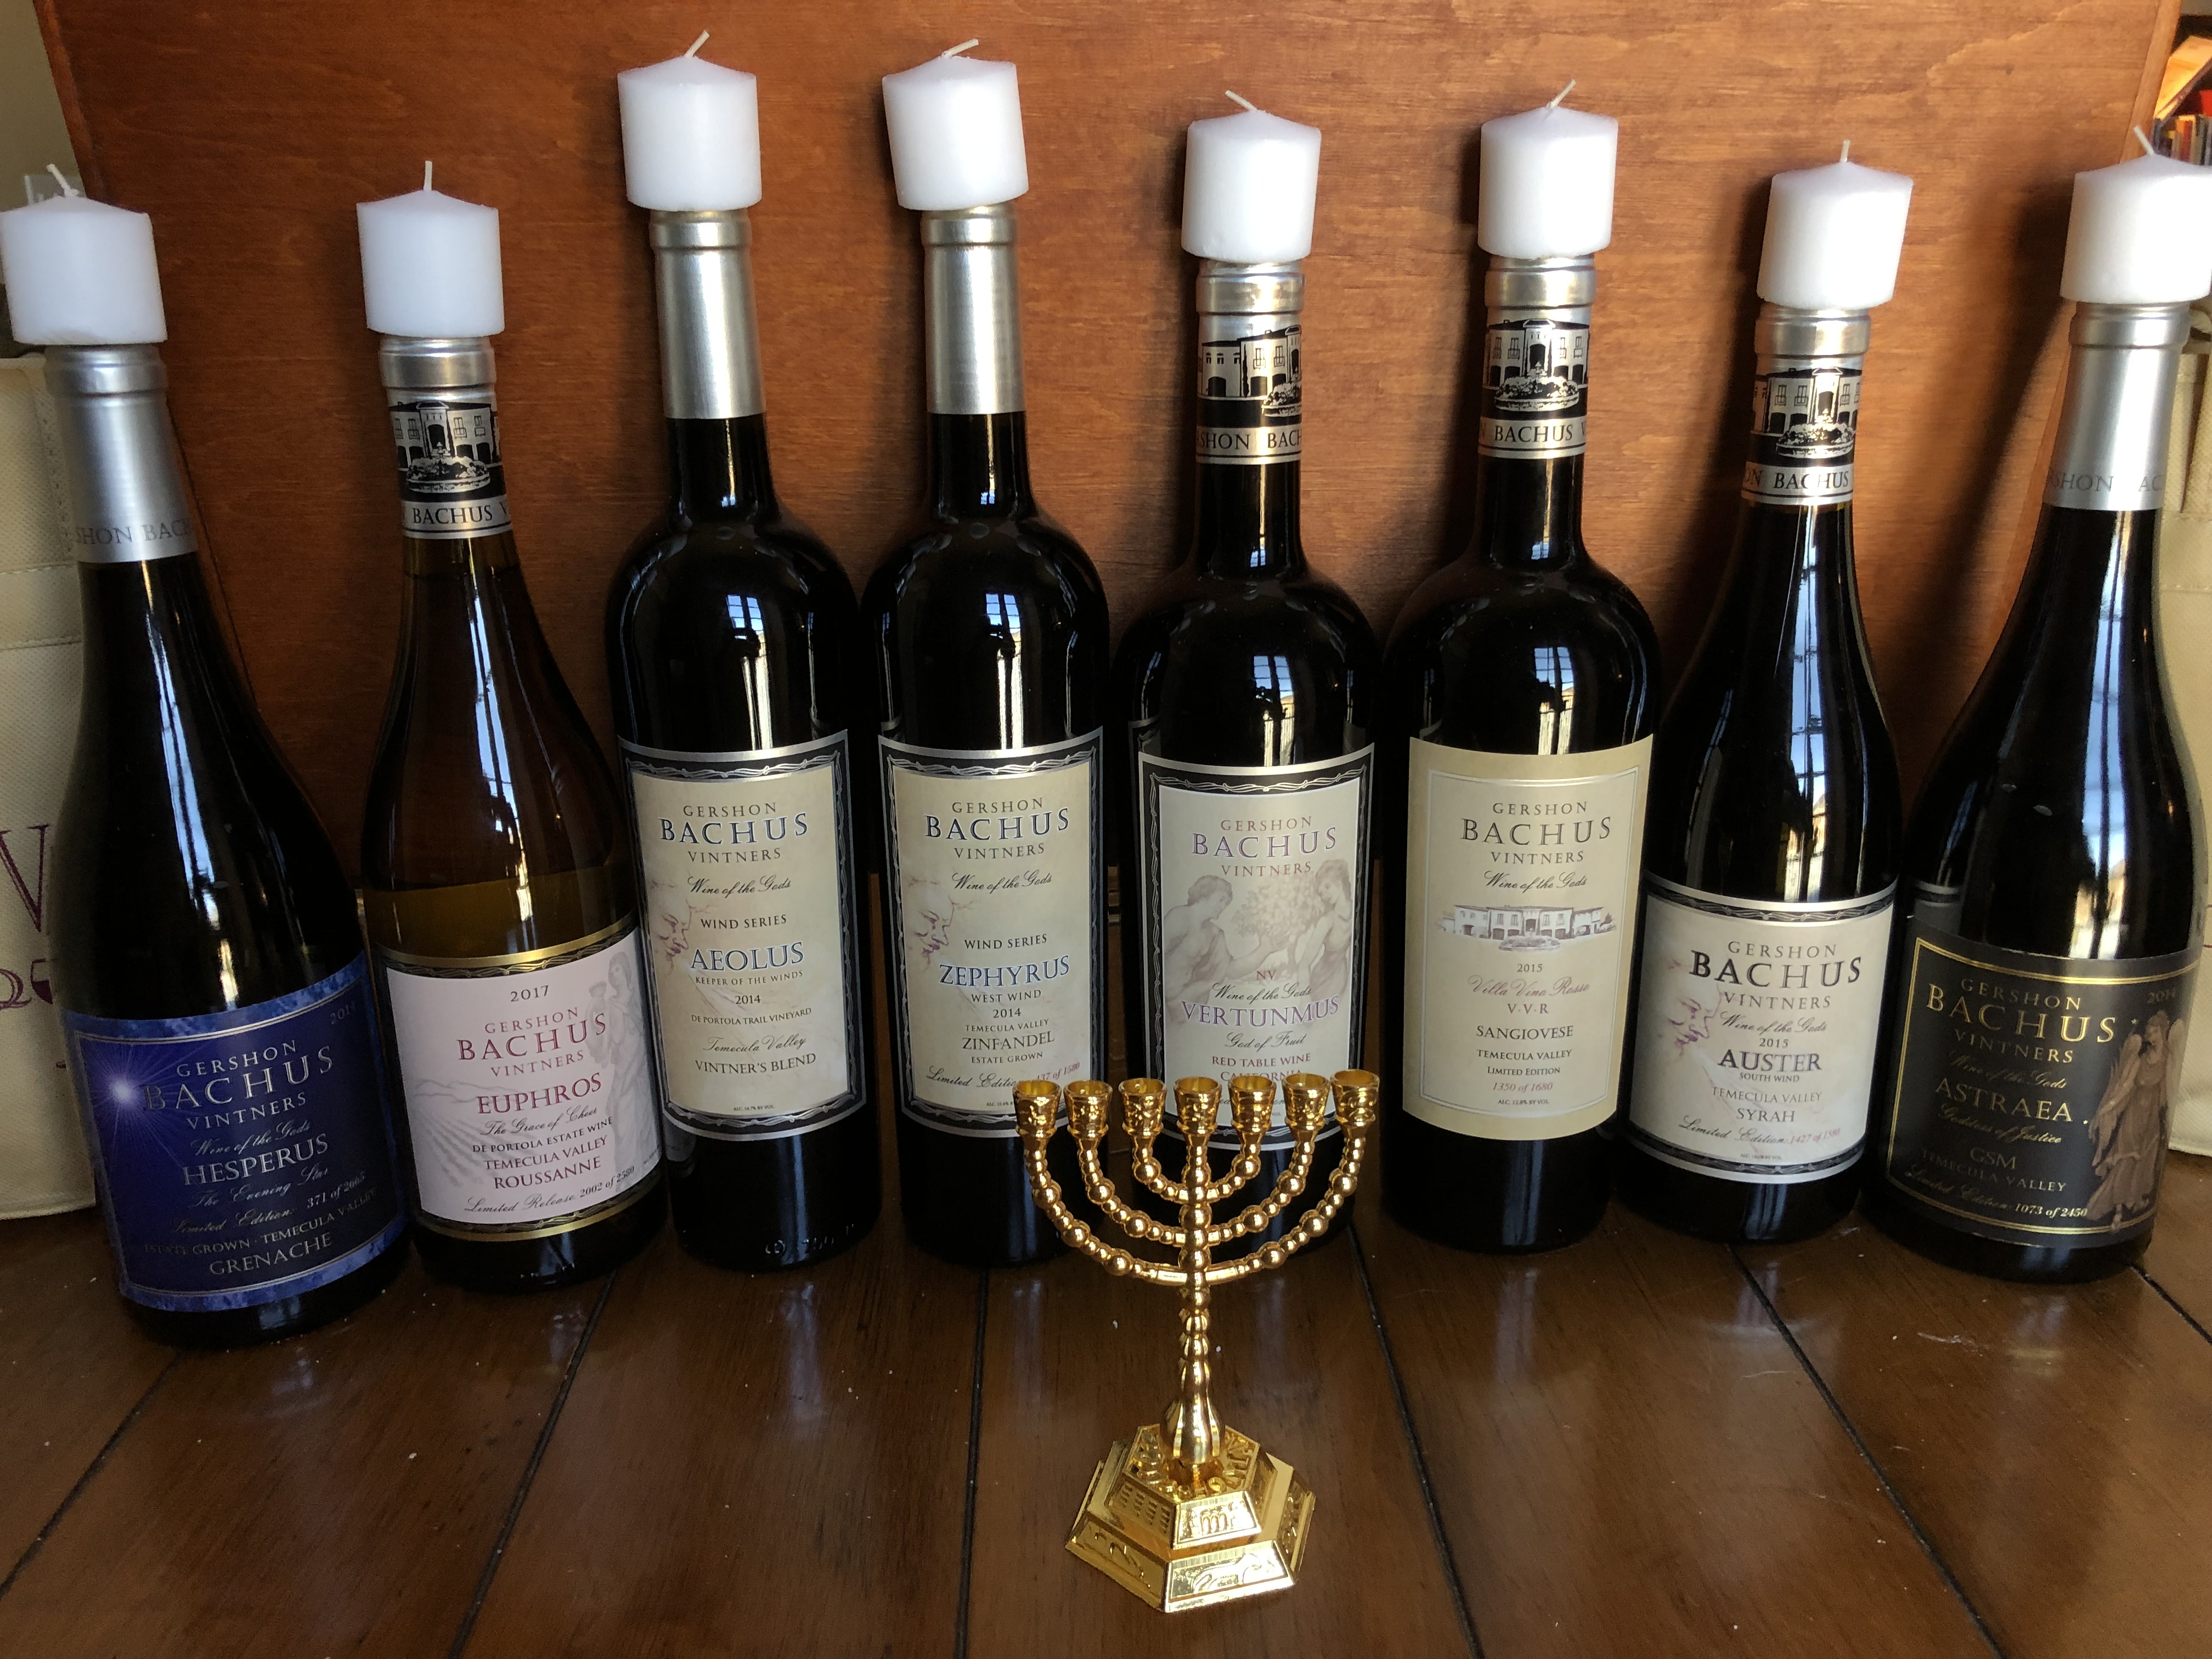 Gershon Bachus Vintners, Temecula, CA launches "HANUKKAH 8" Kosher